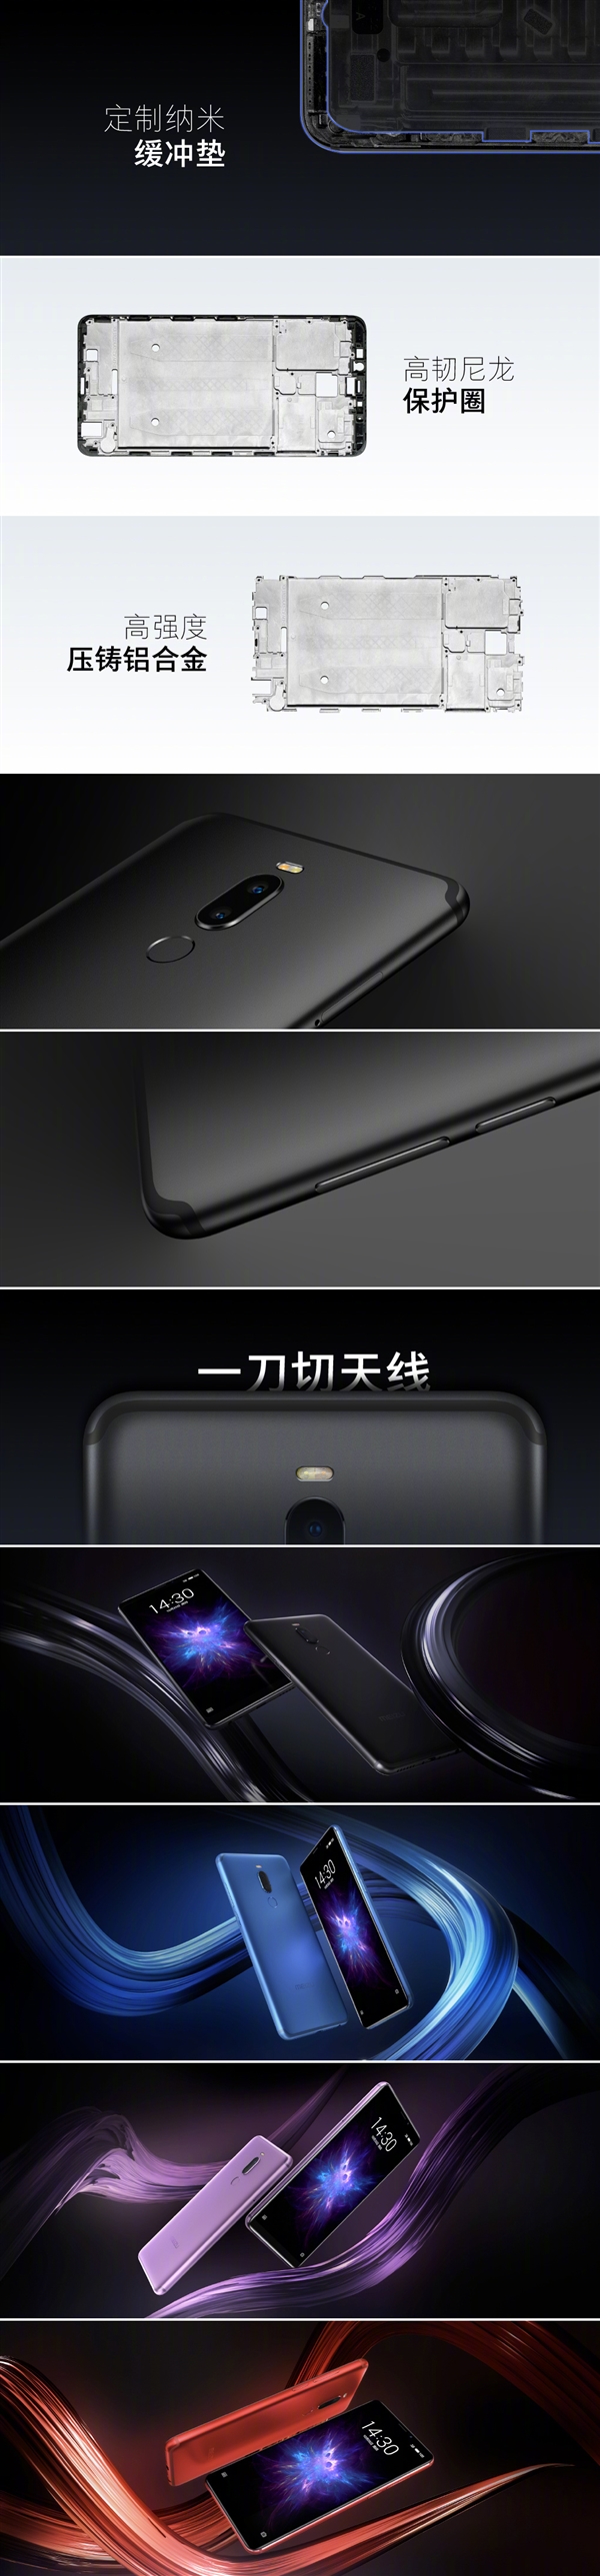 苹果手机使用说明书，号称 “千元机工艺杀手” 魅族 Note 8 亮相